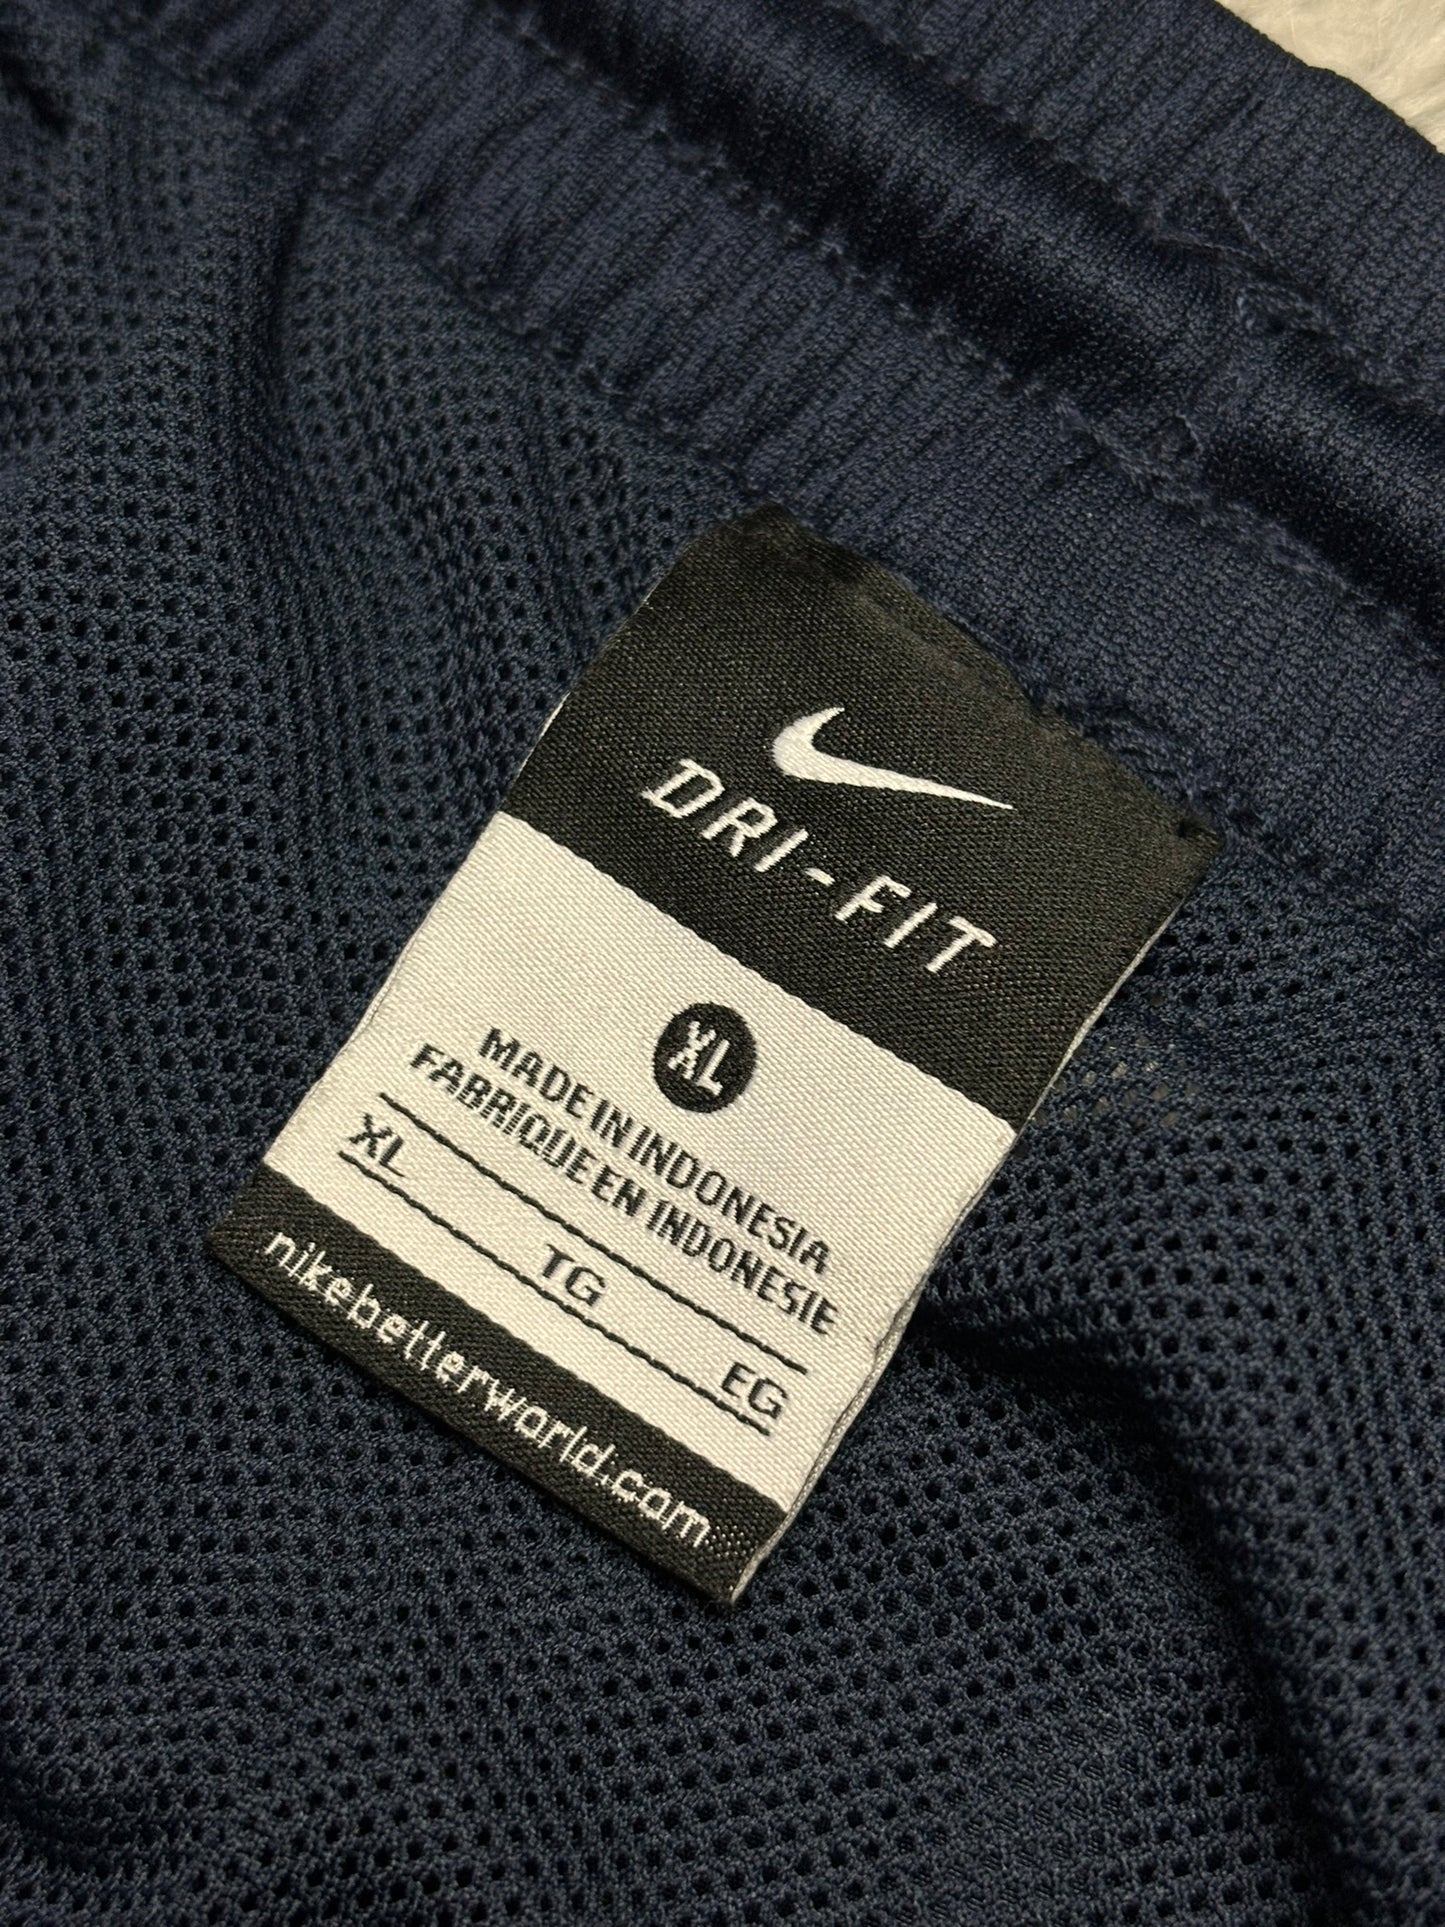 Chandal Nike Drifit Track Pants 00s - XL